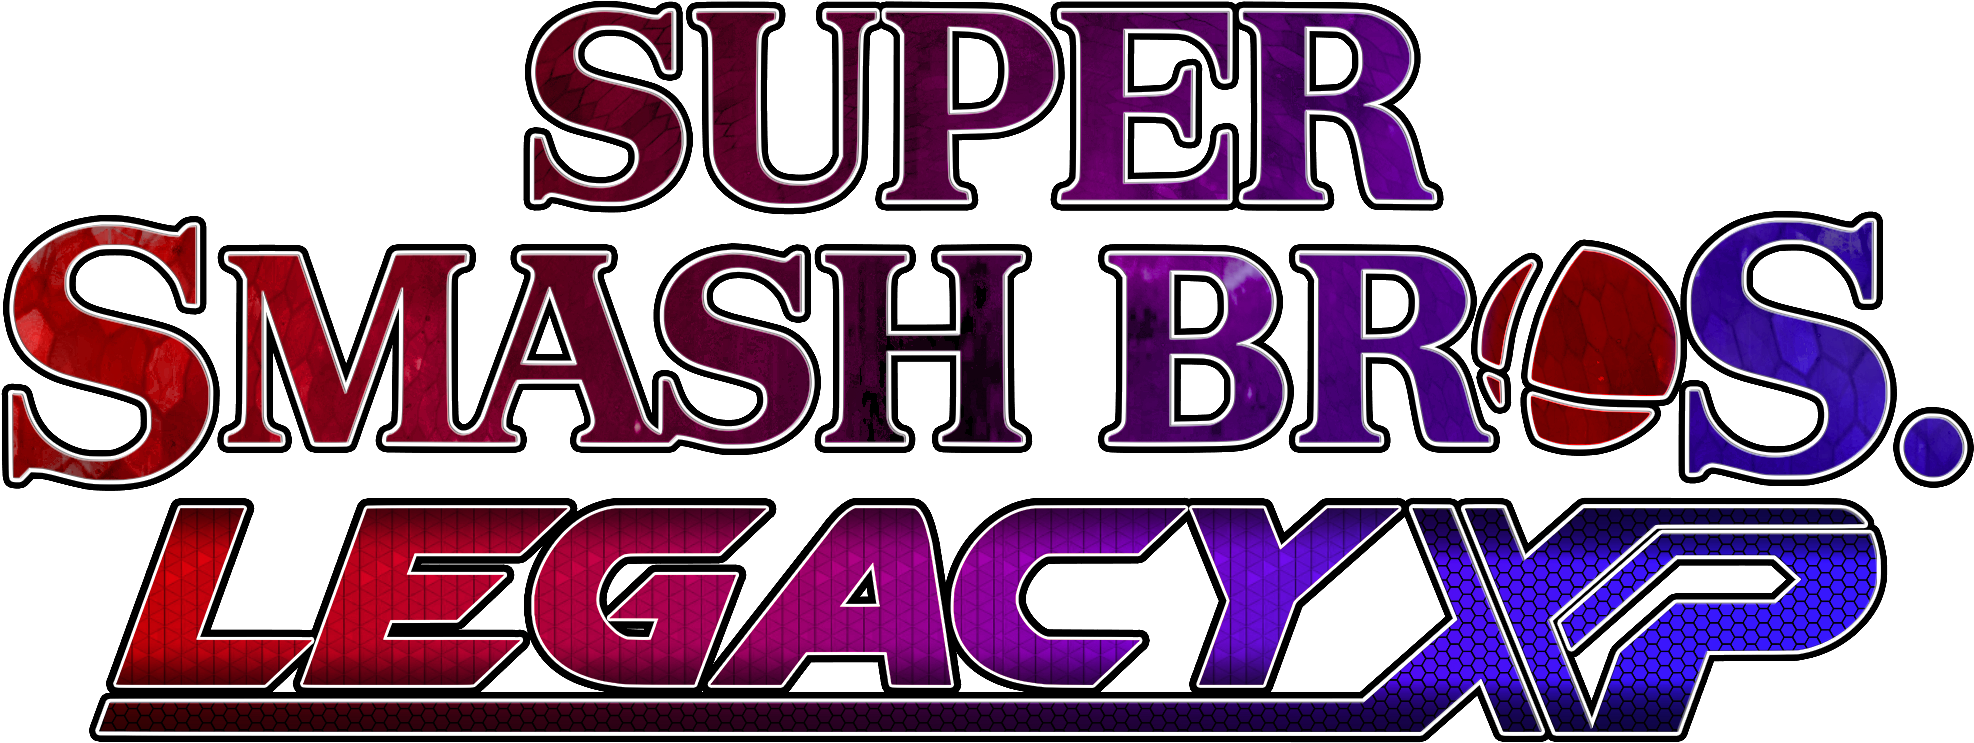 [ Img] - Super Smash Bros Legacy Xp Logo (2000x750), Png Download